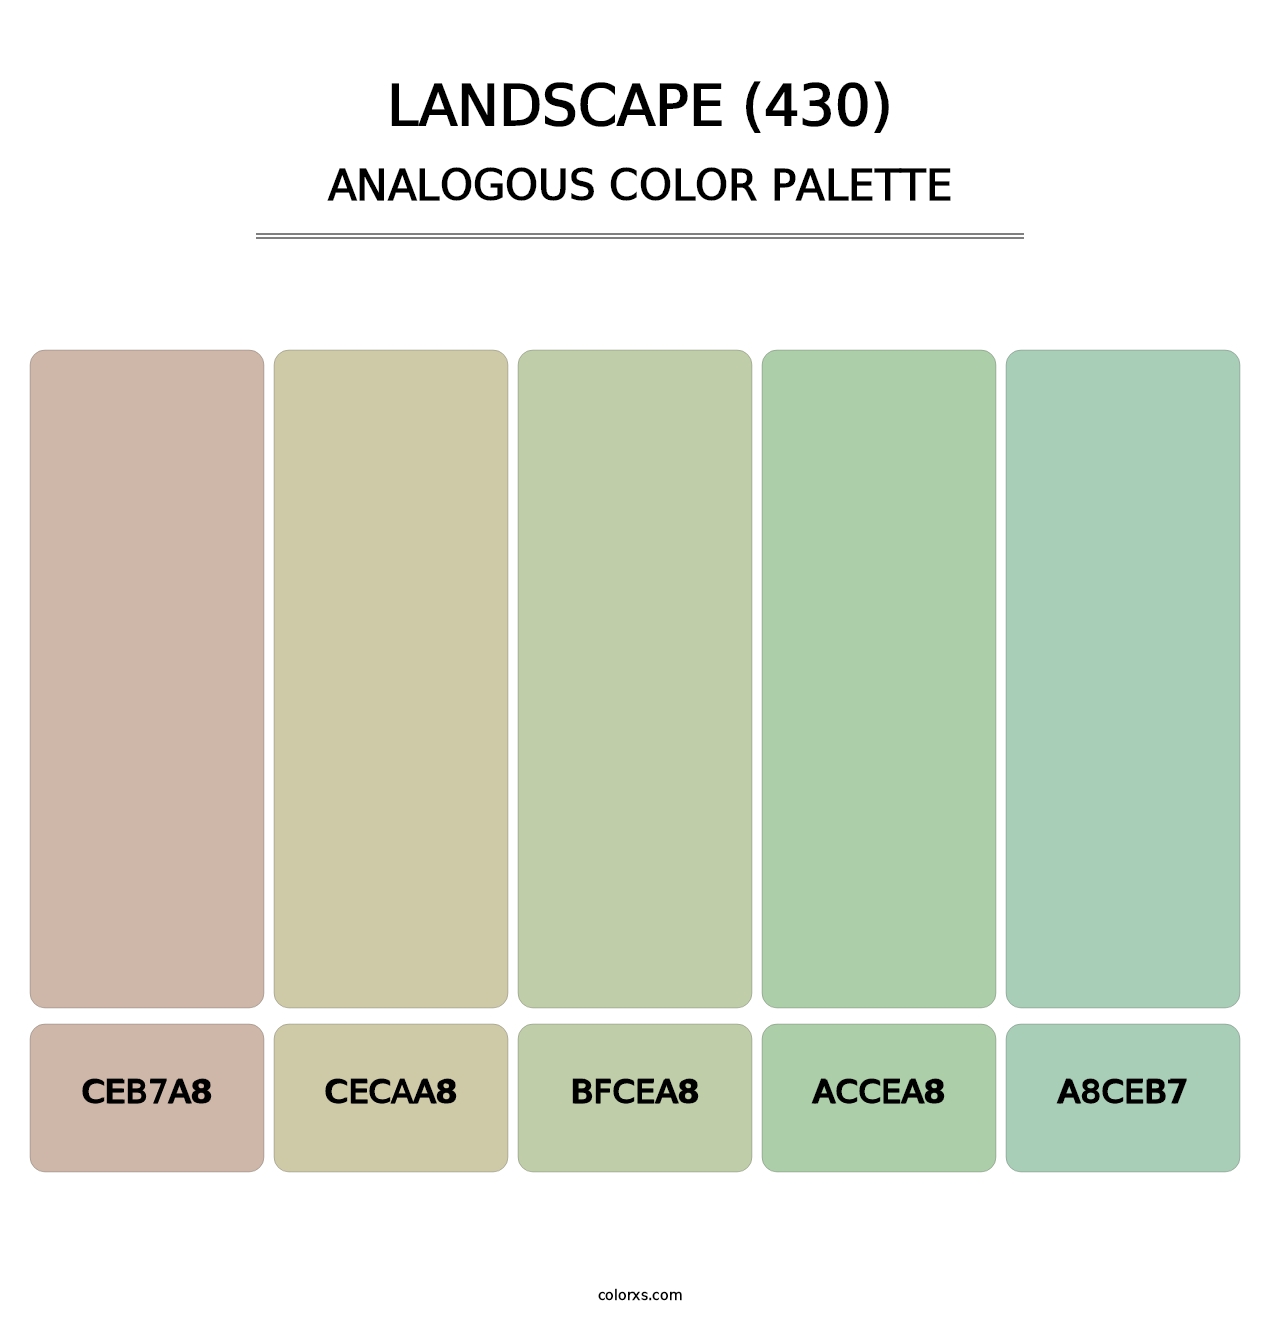 Landscape (430) - Analogous Color Palette